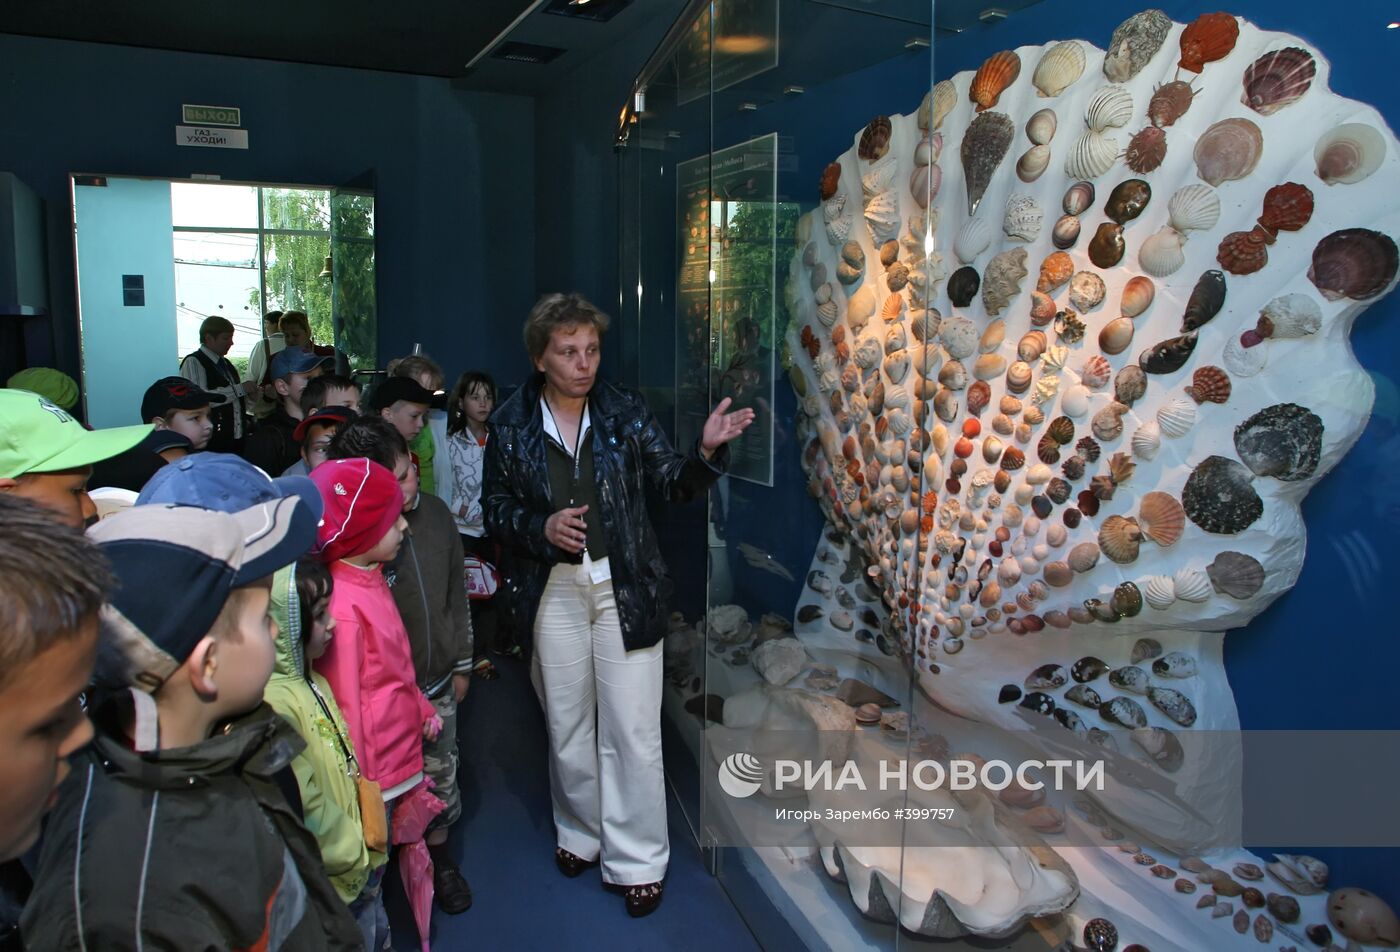 Музей Мирового океана - обладатель Гран-при "Интермузея -2009"